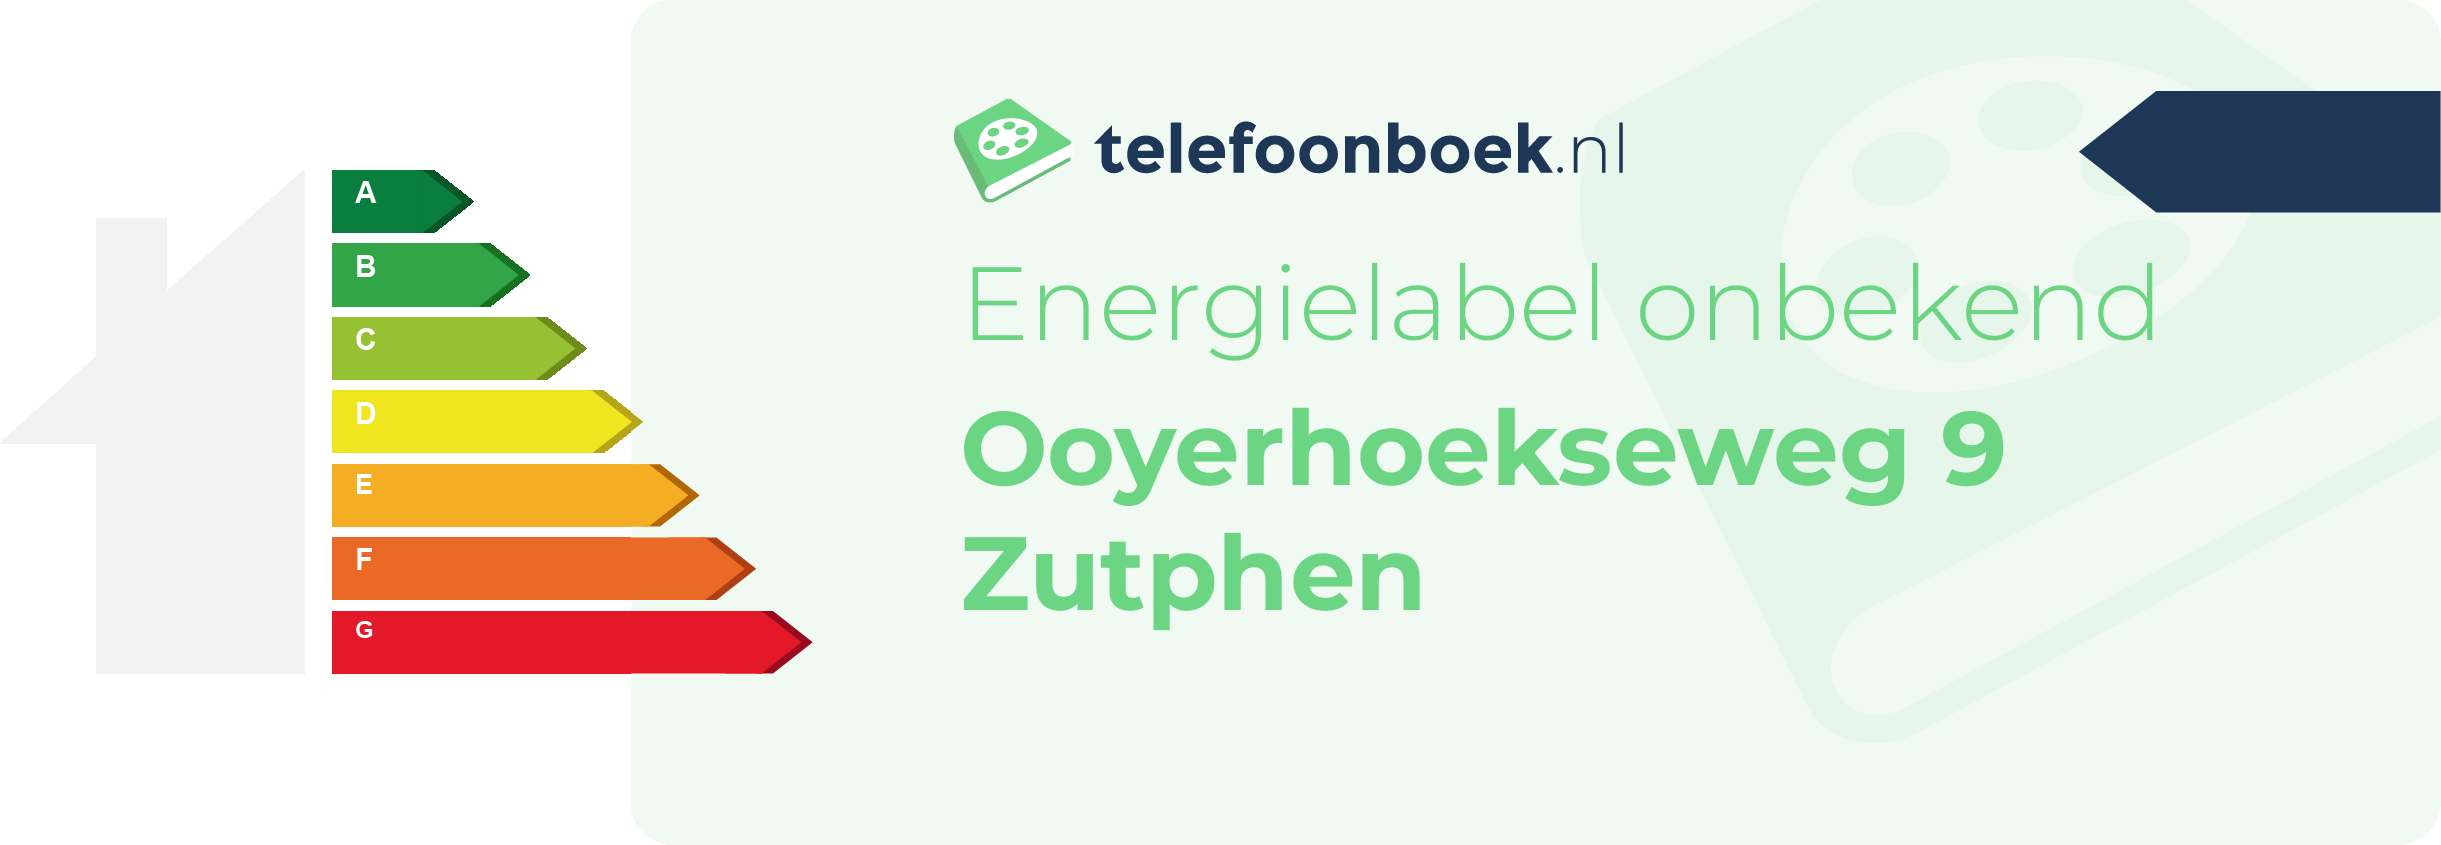 Energielabel Ooyerhoekseweg 9 Zutphen